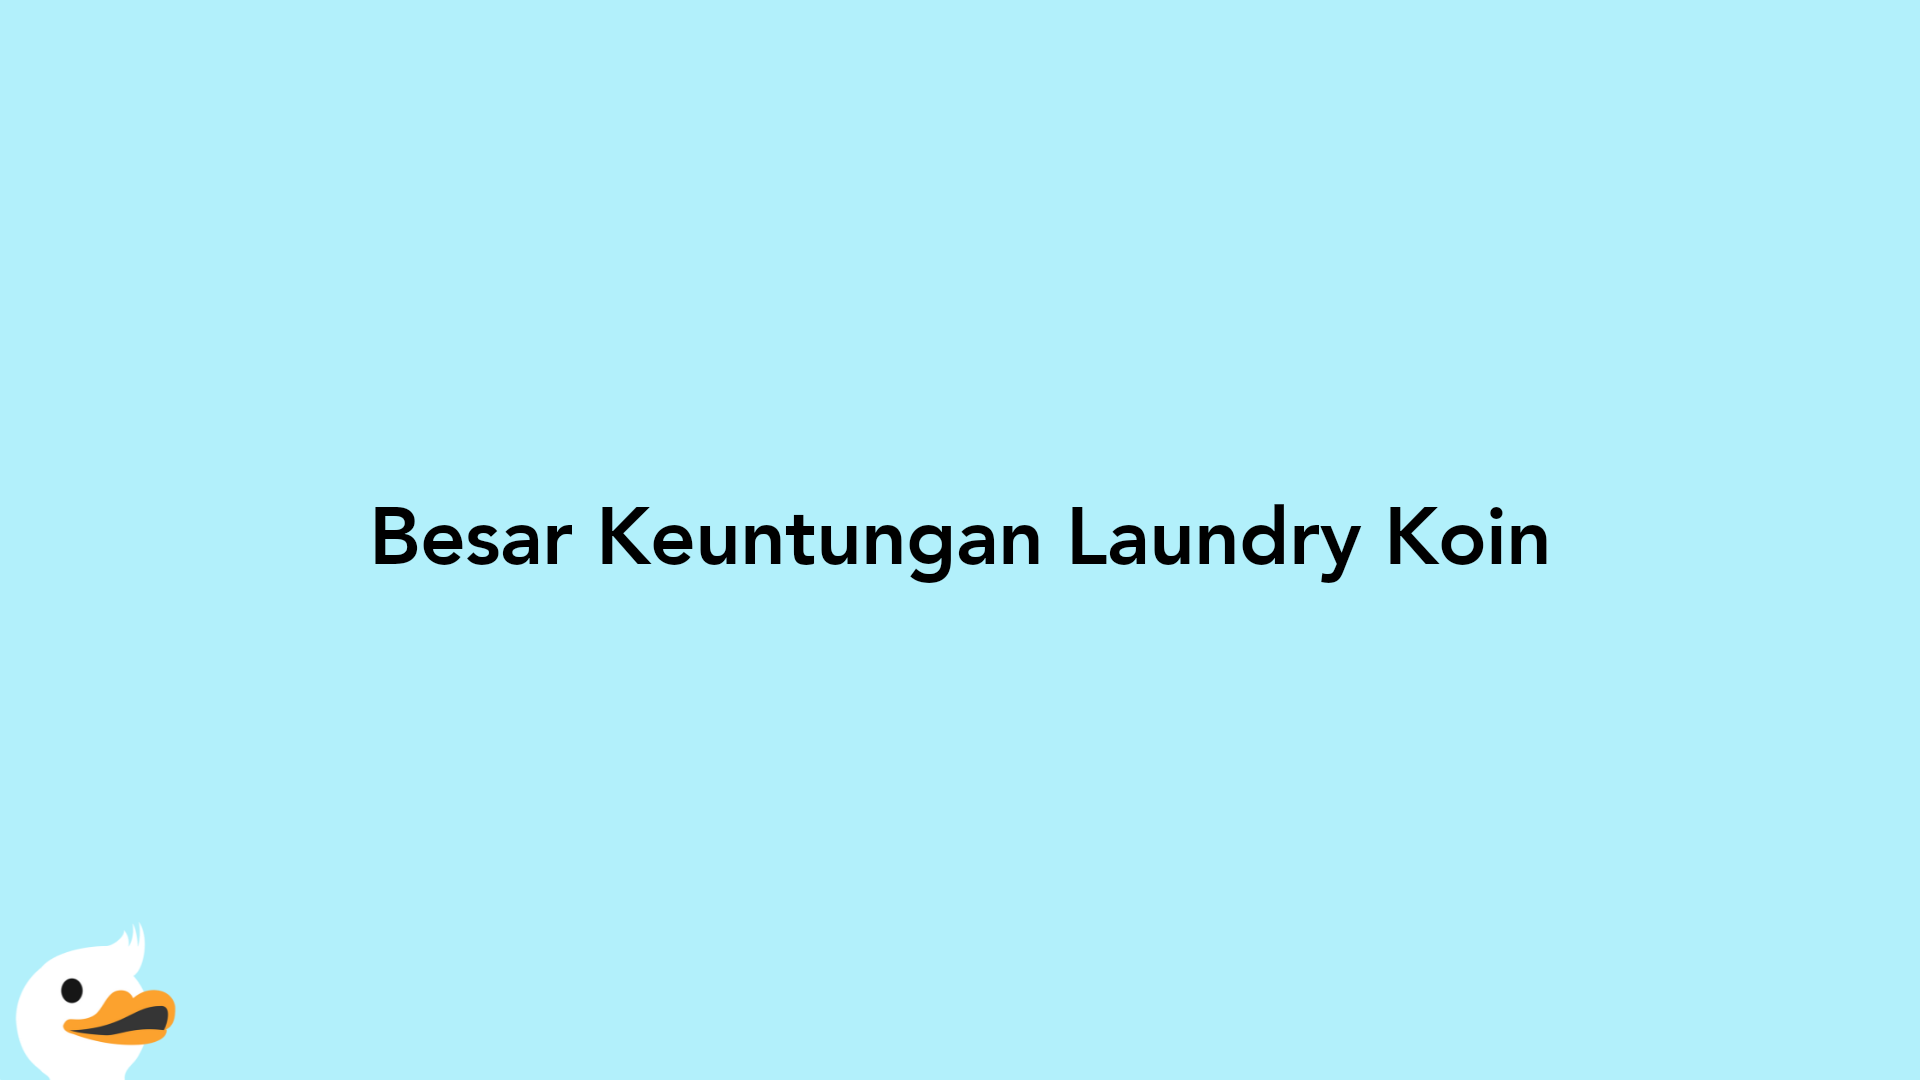 Besar Keuntungan Laundry Koin